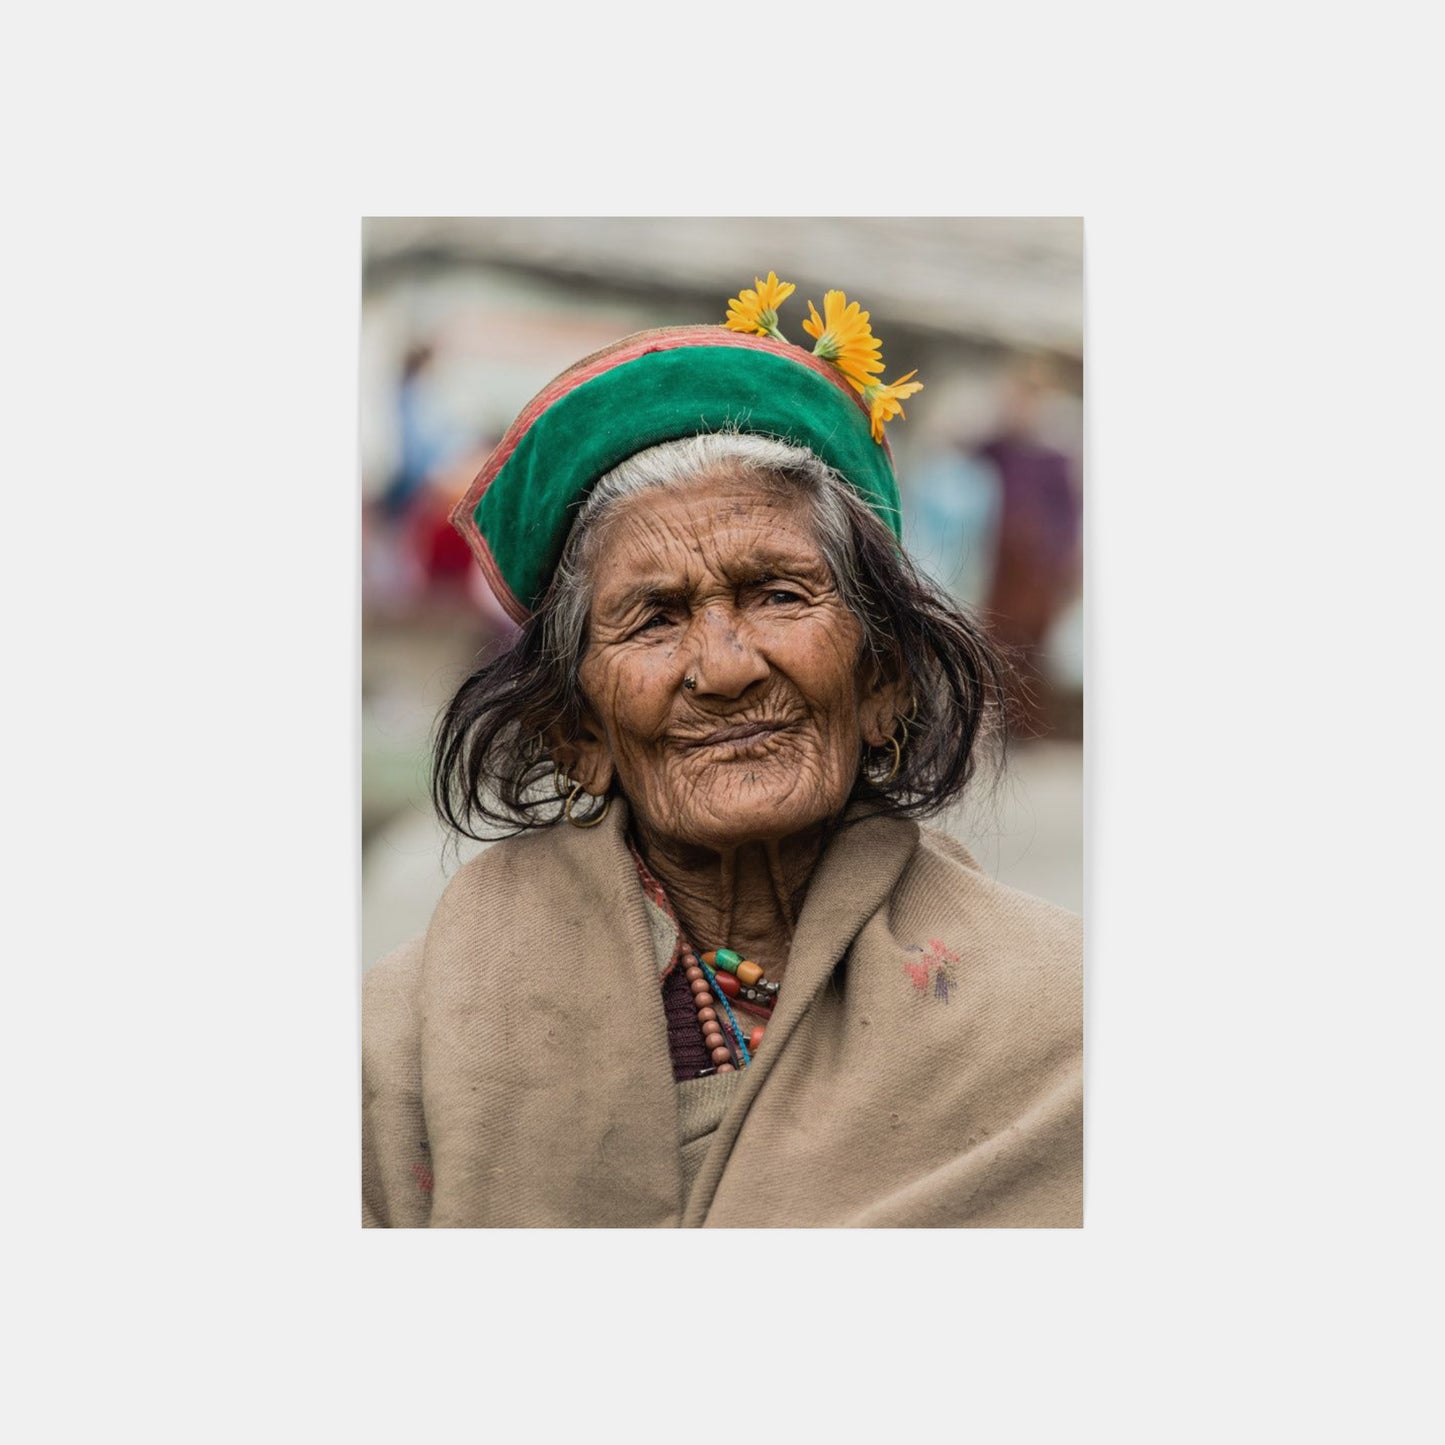 Manifest of Life – Kalpa, India